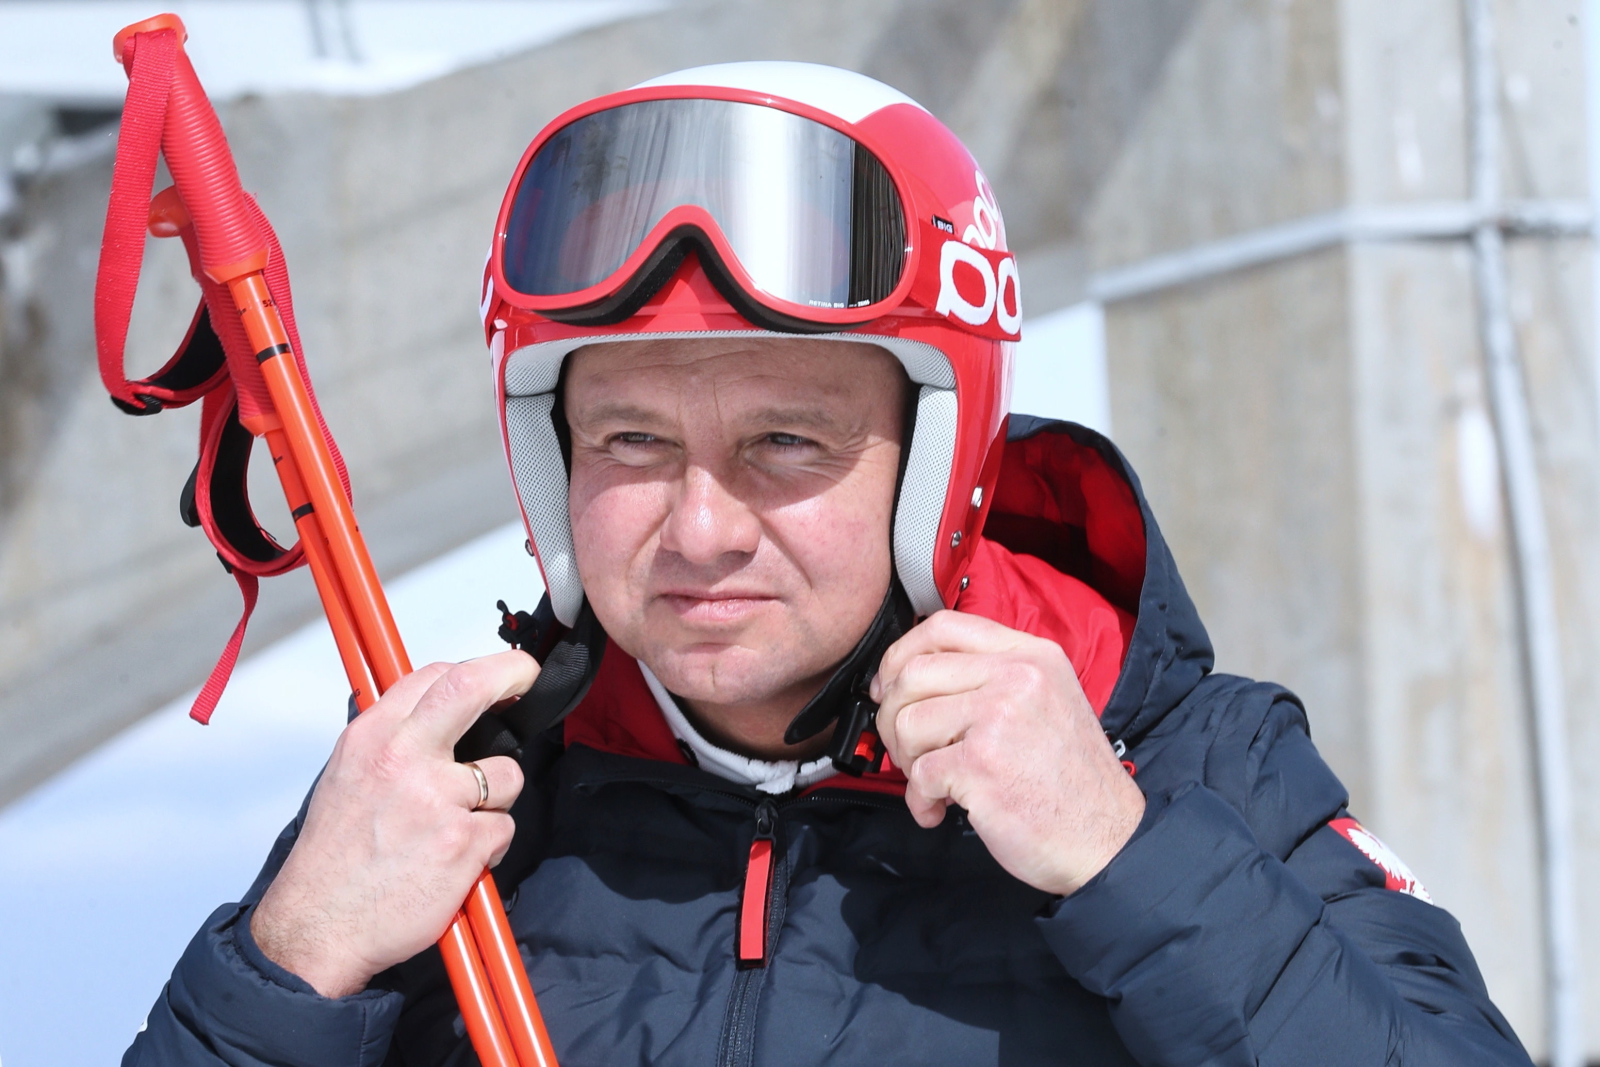 Andrzej Duda zjeżdża na nartach z Kasprowego Wierchu
PAP/Grzegorz Momot